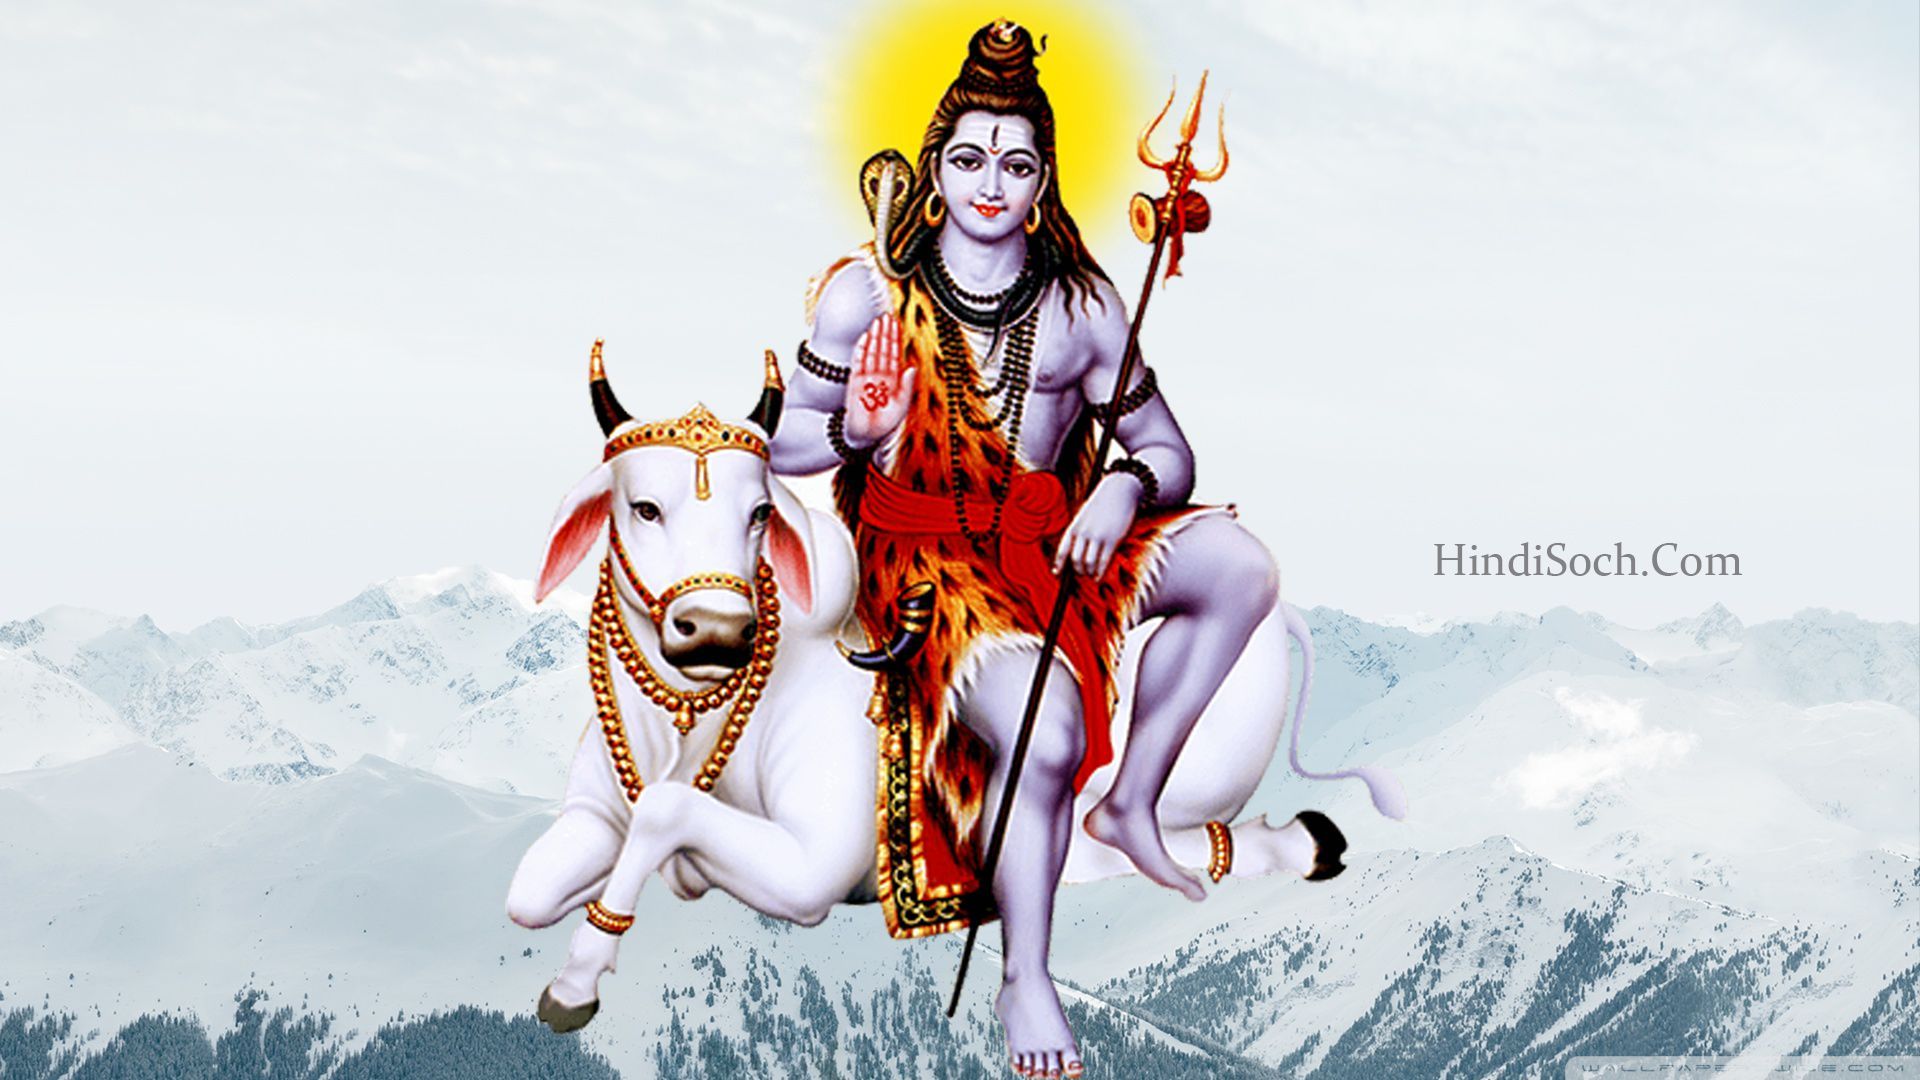 Best Lord Shiva Image. God Shiva Image 2020